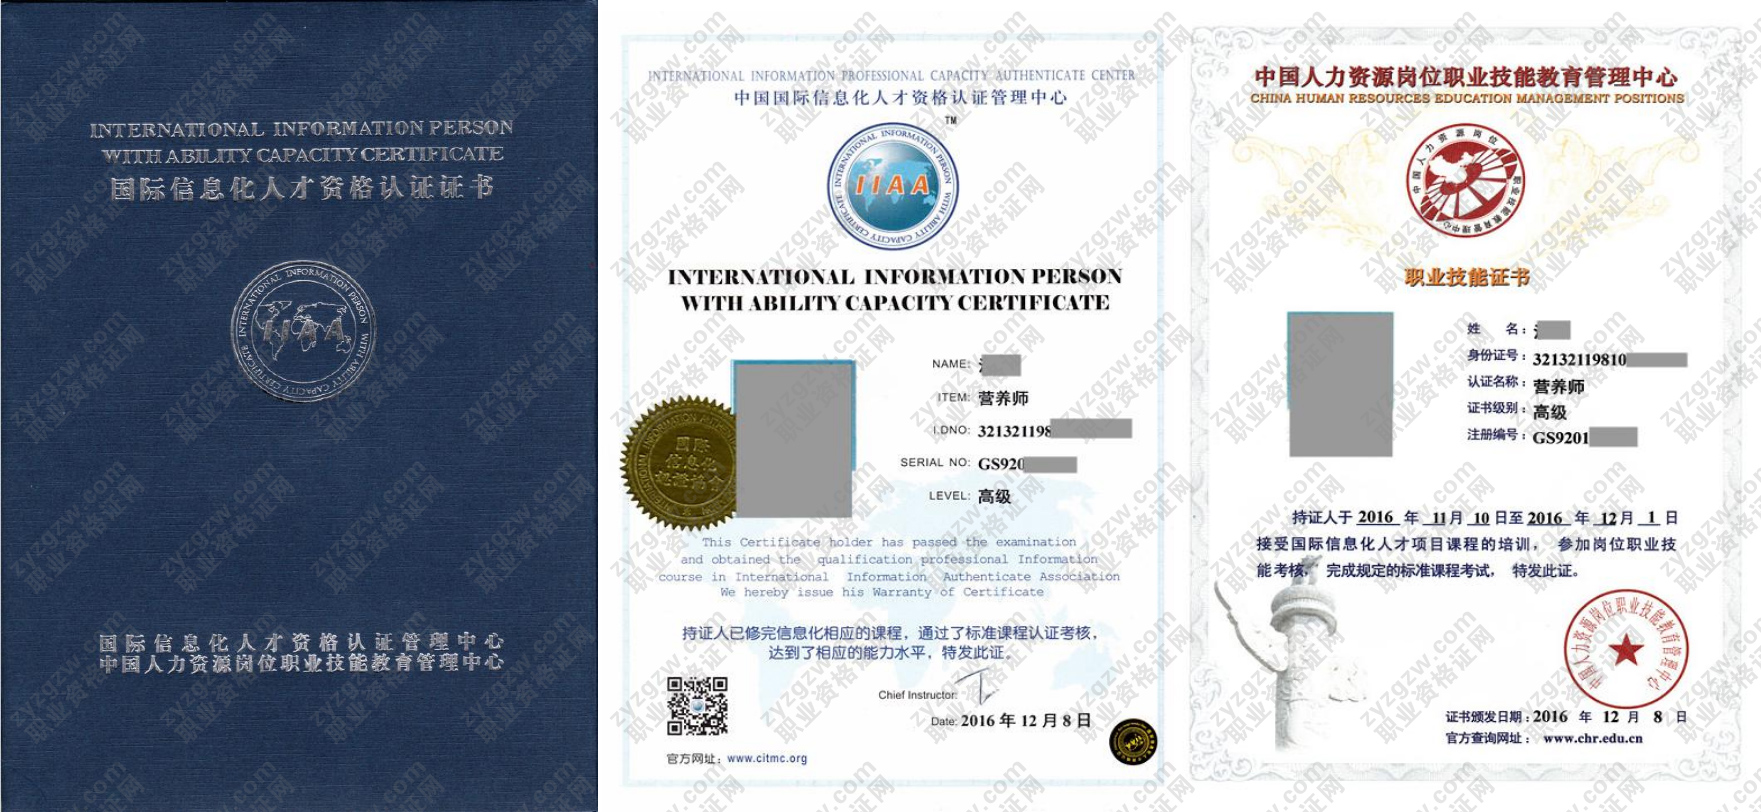 中国人力资源岗位职业技能教育管理中心 家用电子产品维修技师 国际信息化人才资格认证证书